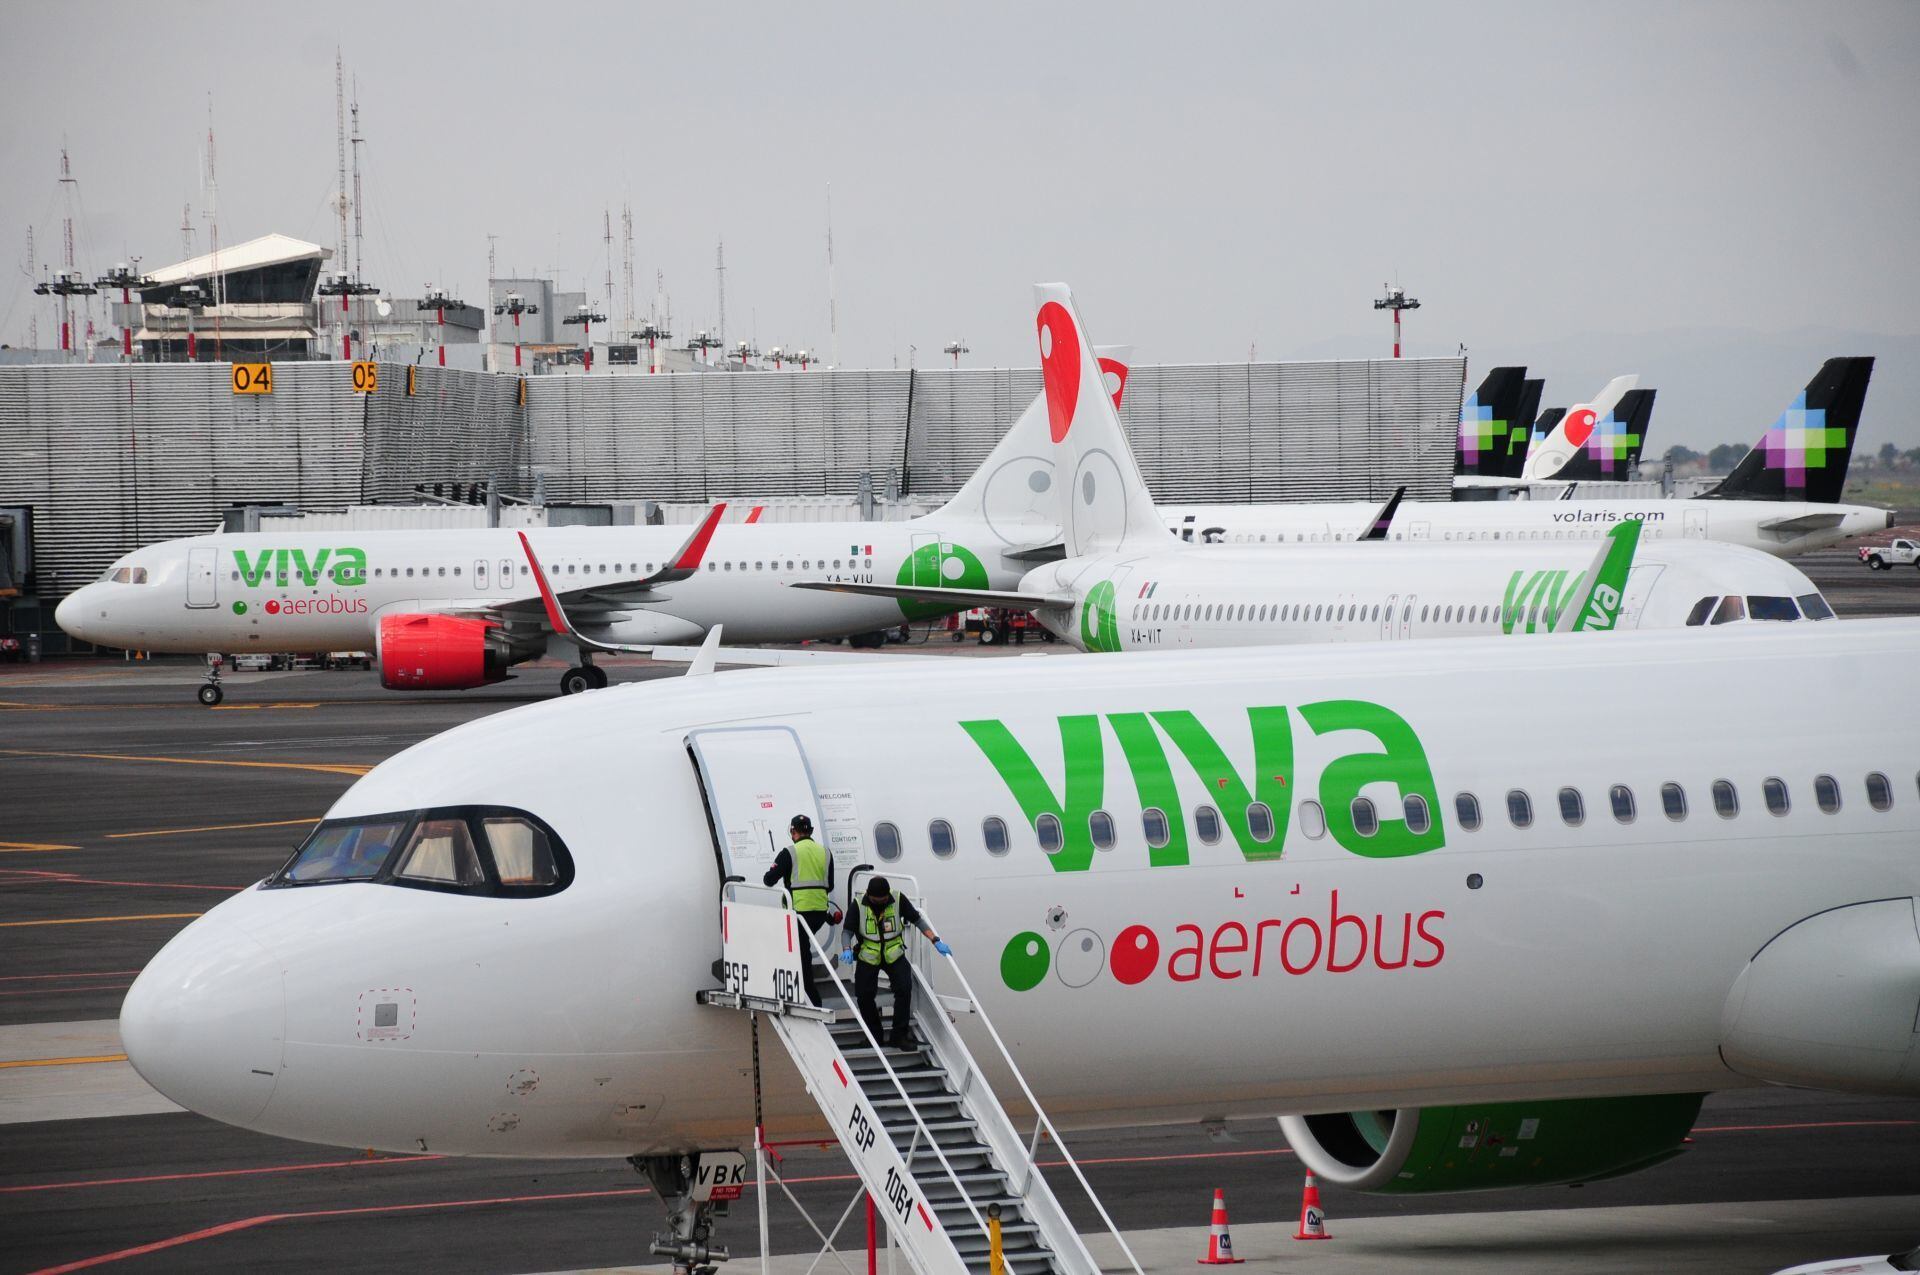 Un golpe más para Viva Aerobus: Pierde 36 mdd en primer trimestre de 2023